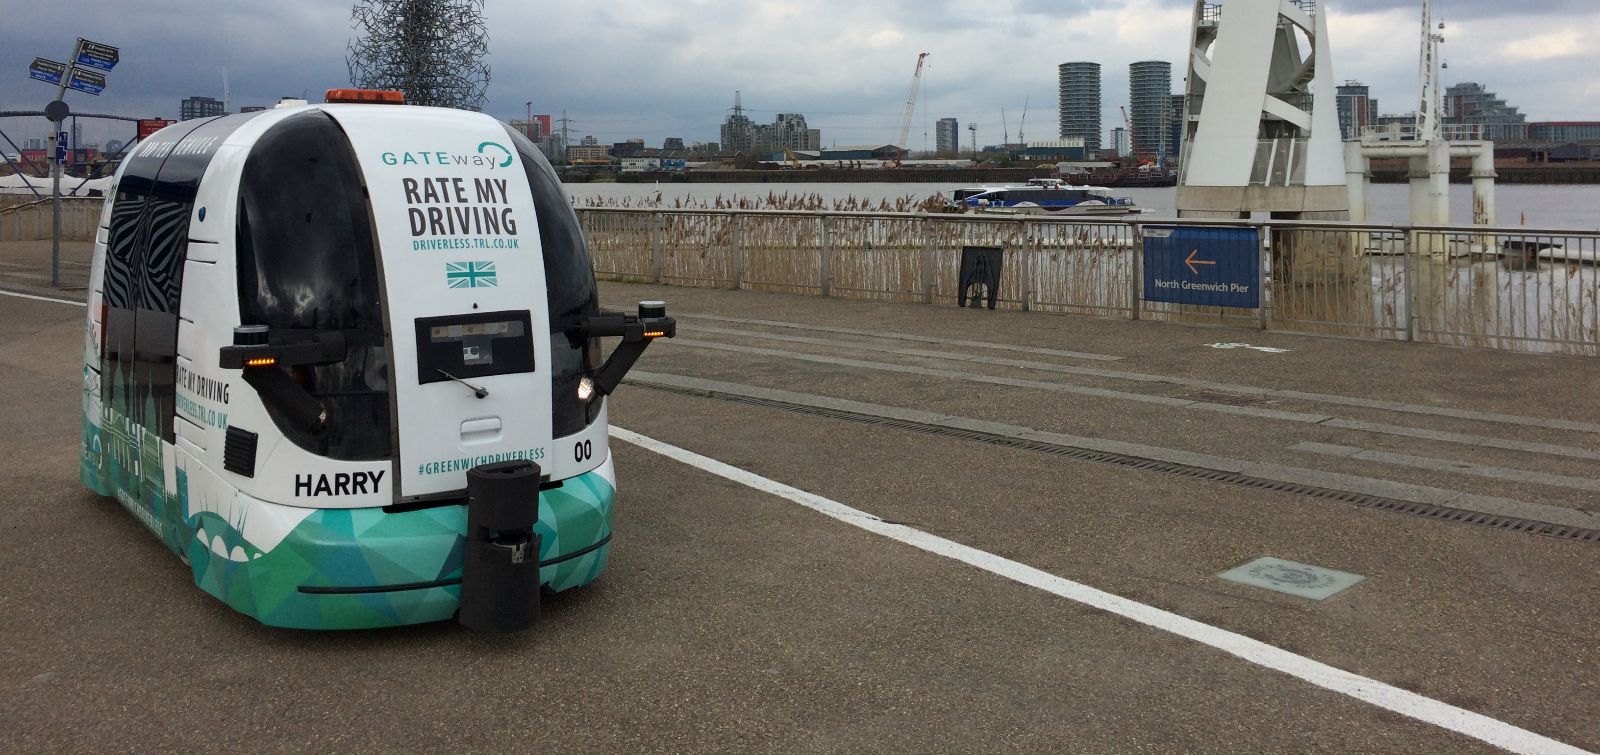 La carrozza senza cocchiere arriva a Londra: fa parte del progetto sperimentale Gateway.